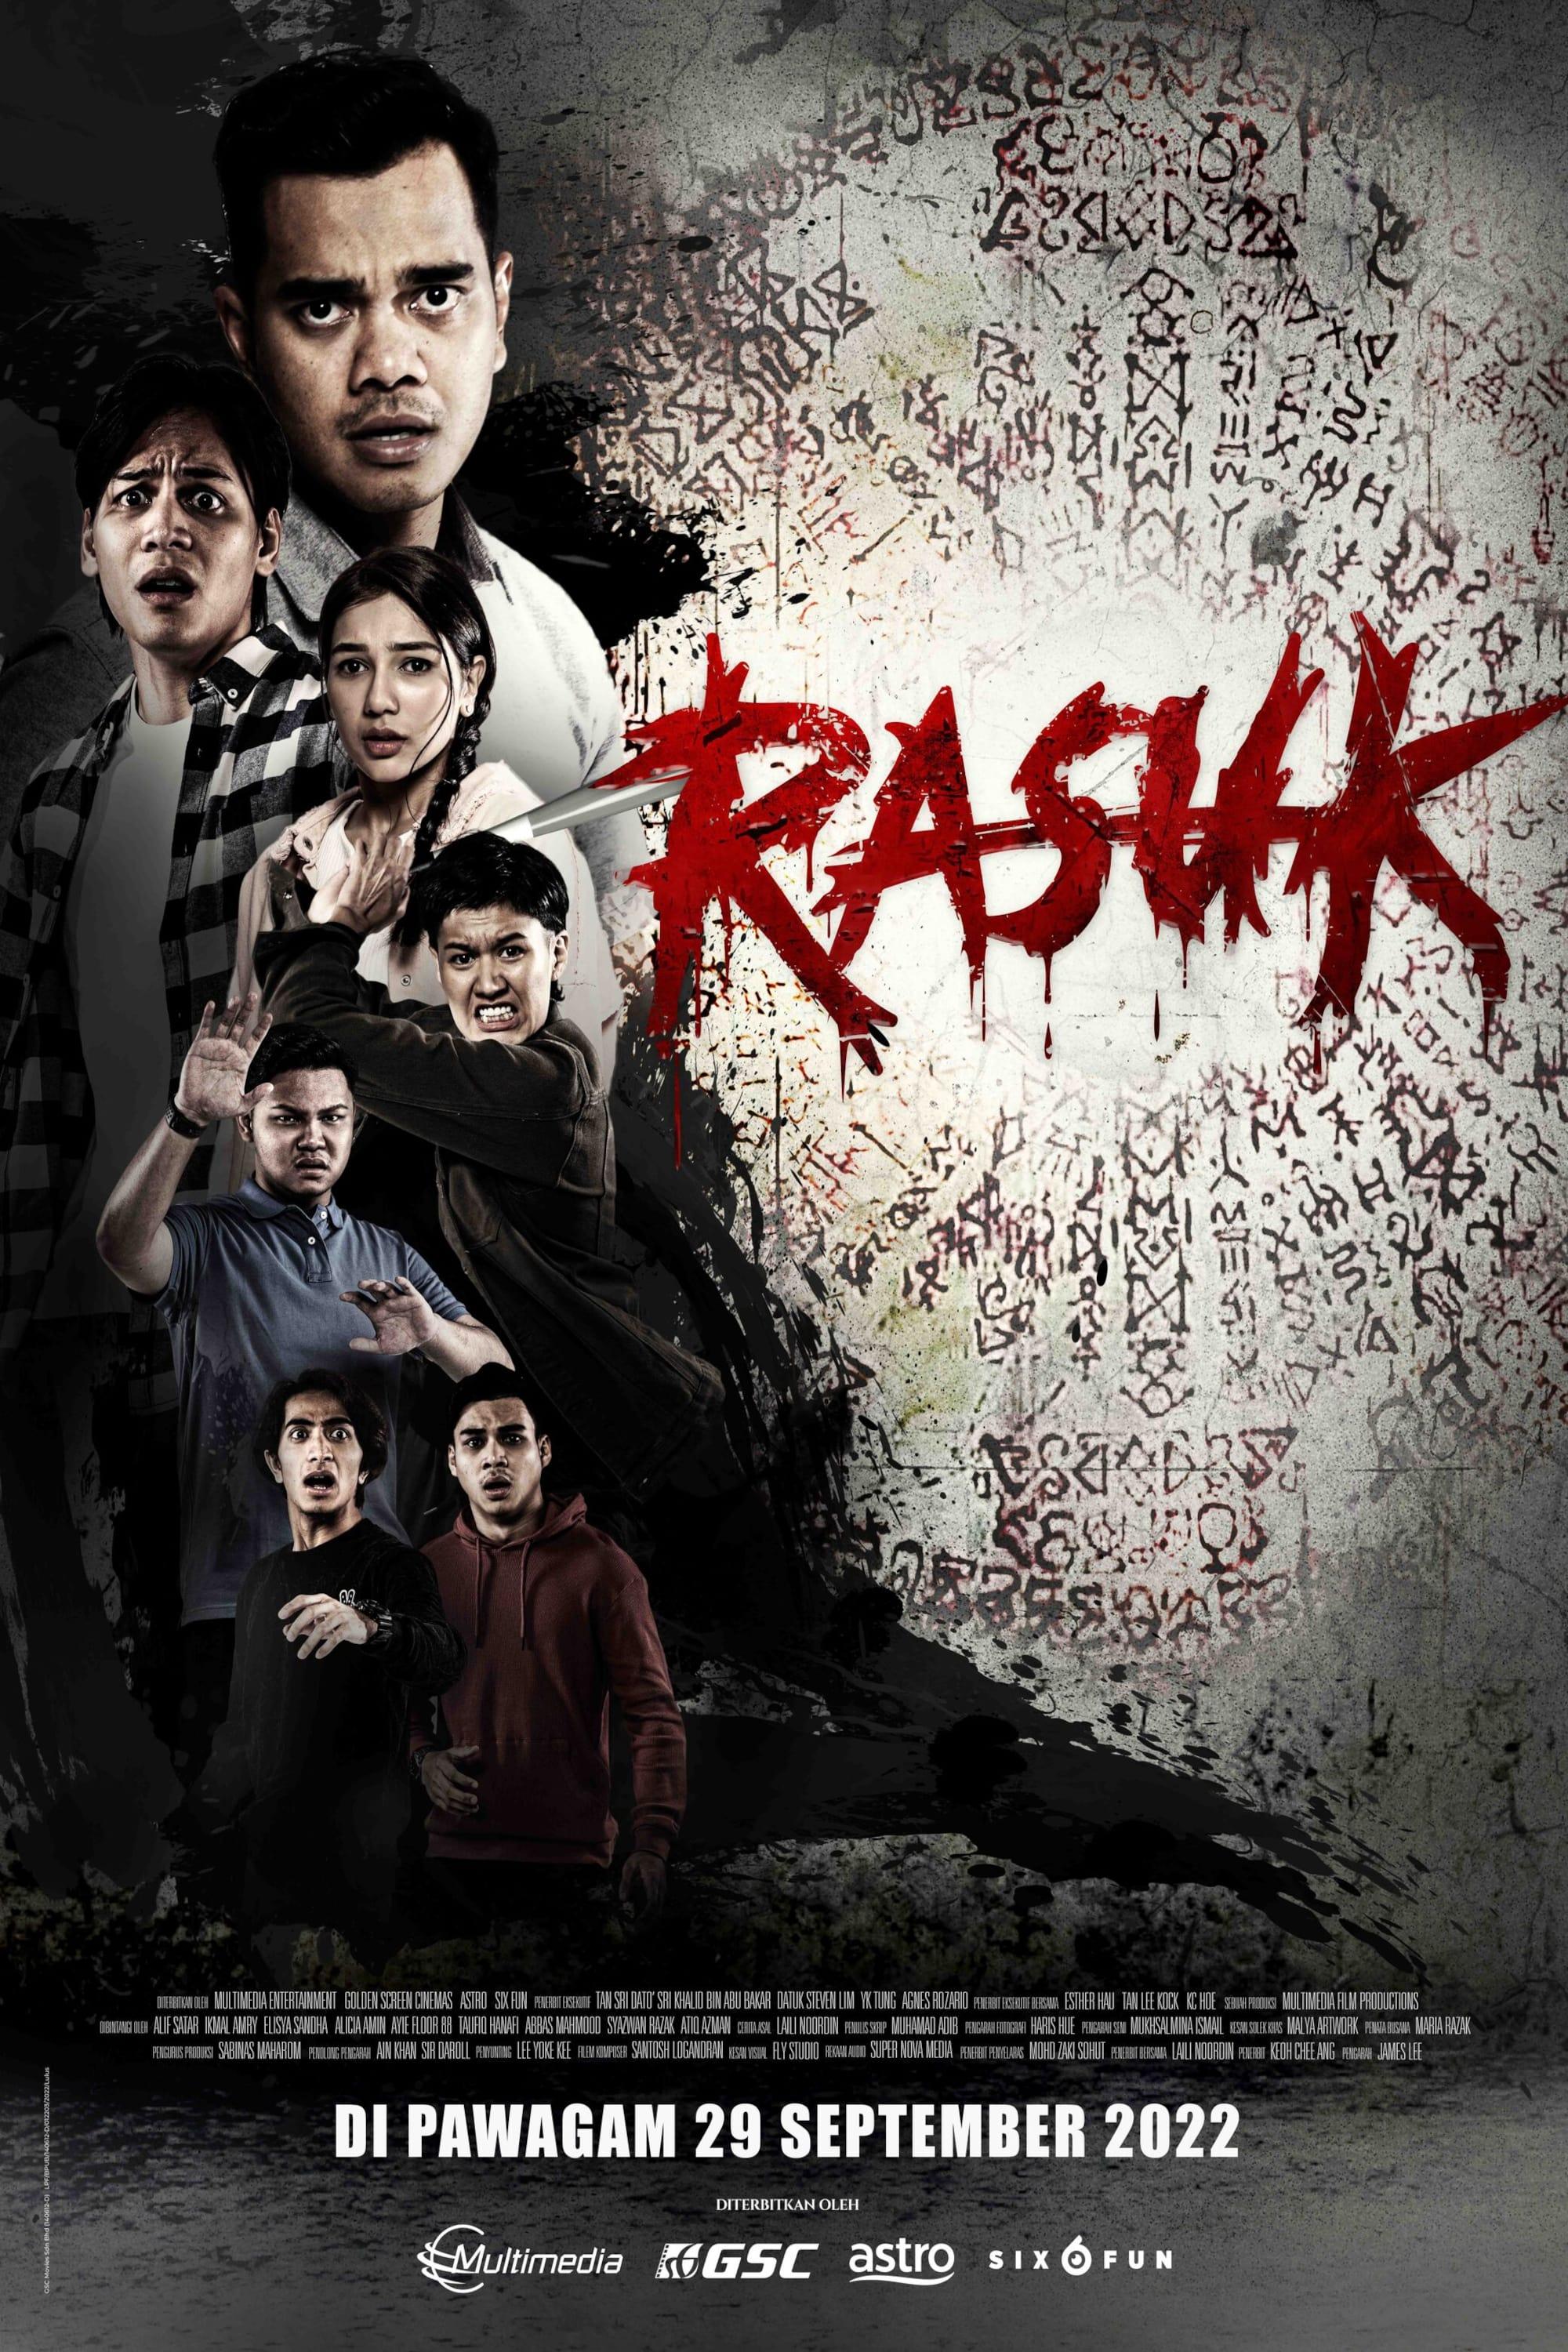 Rasuk poster